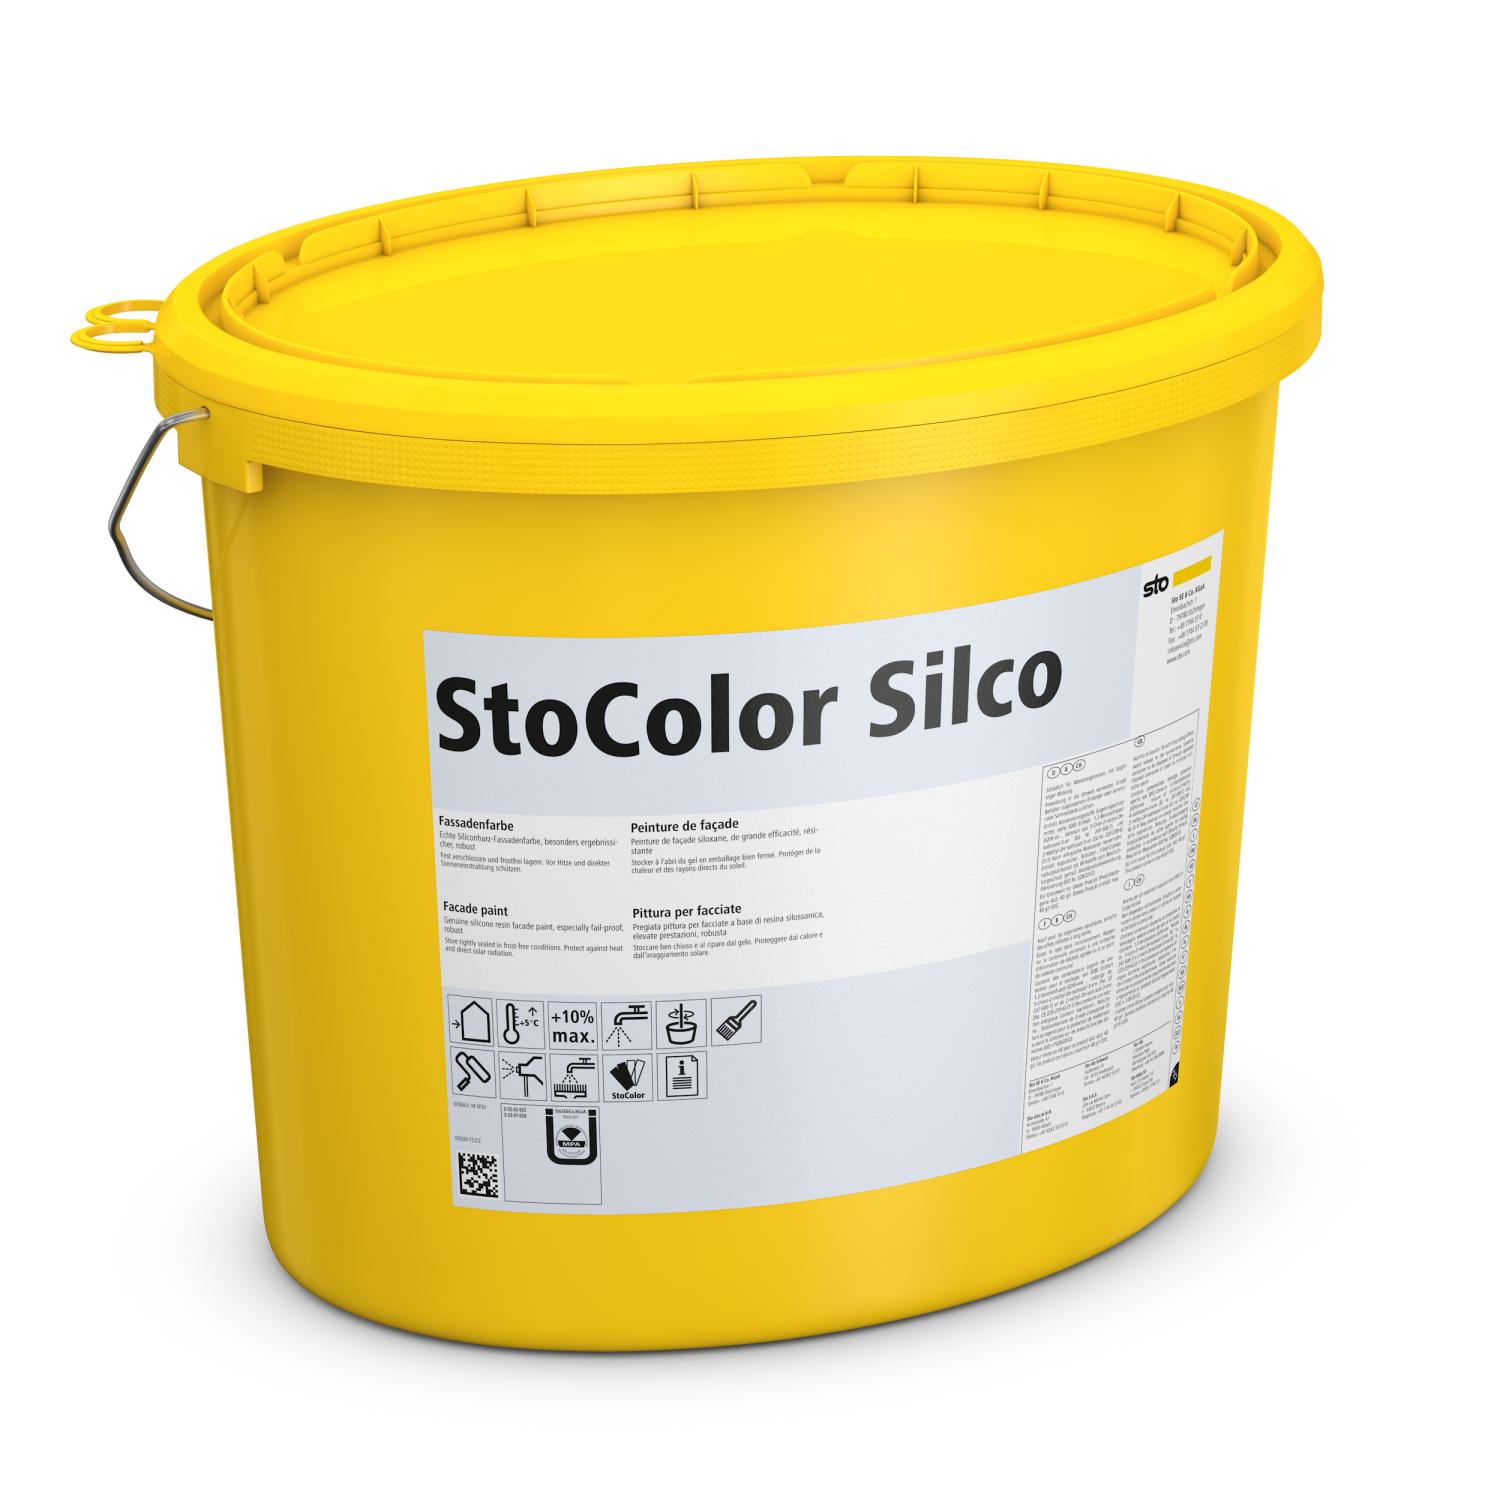 StoColor Silco